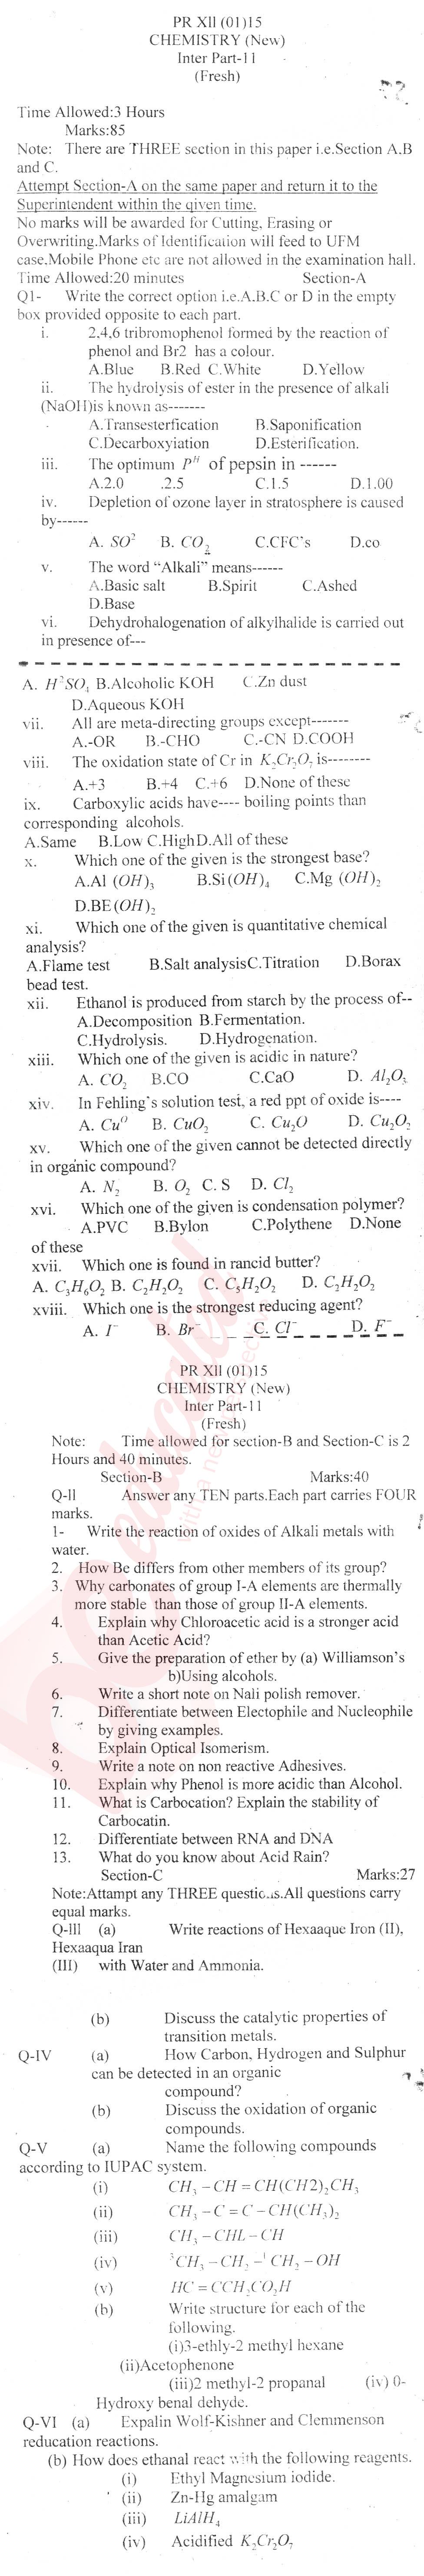 Chemistry FSC Part 2 Past Paper Group 1 BISE Mardan 2015